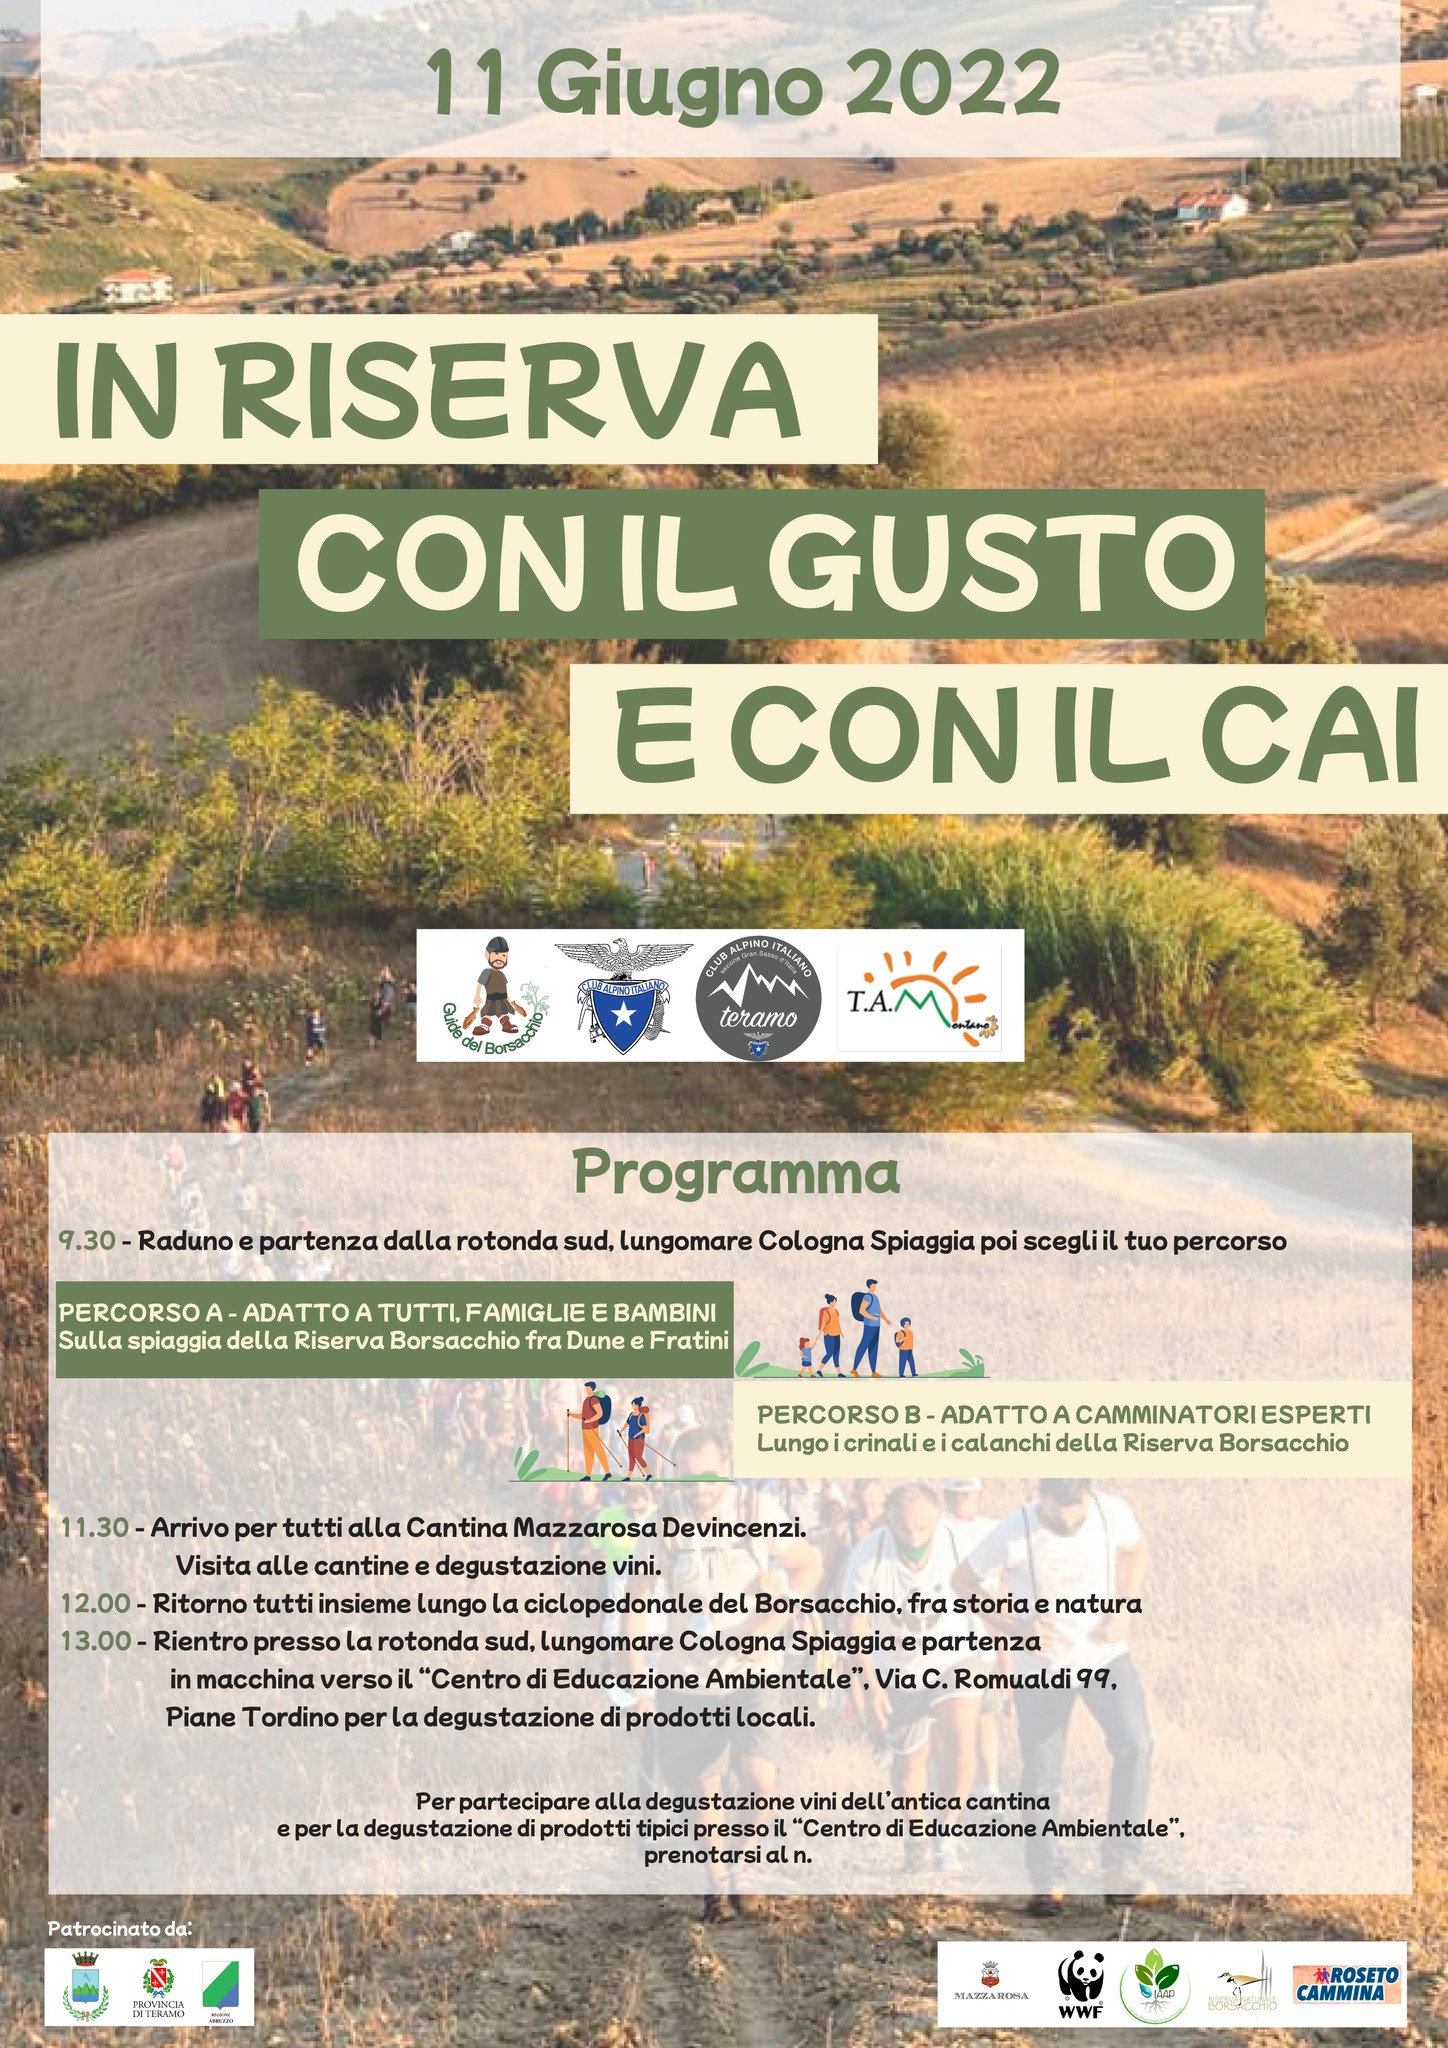 "In riserva con il gusto e con il CAI", grande evento nella Riserva Borsacchio con Patrocinio di Regione Abruzzo